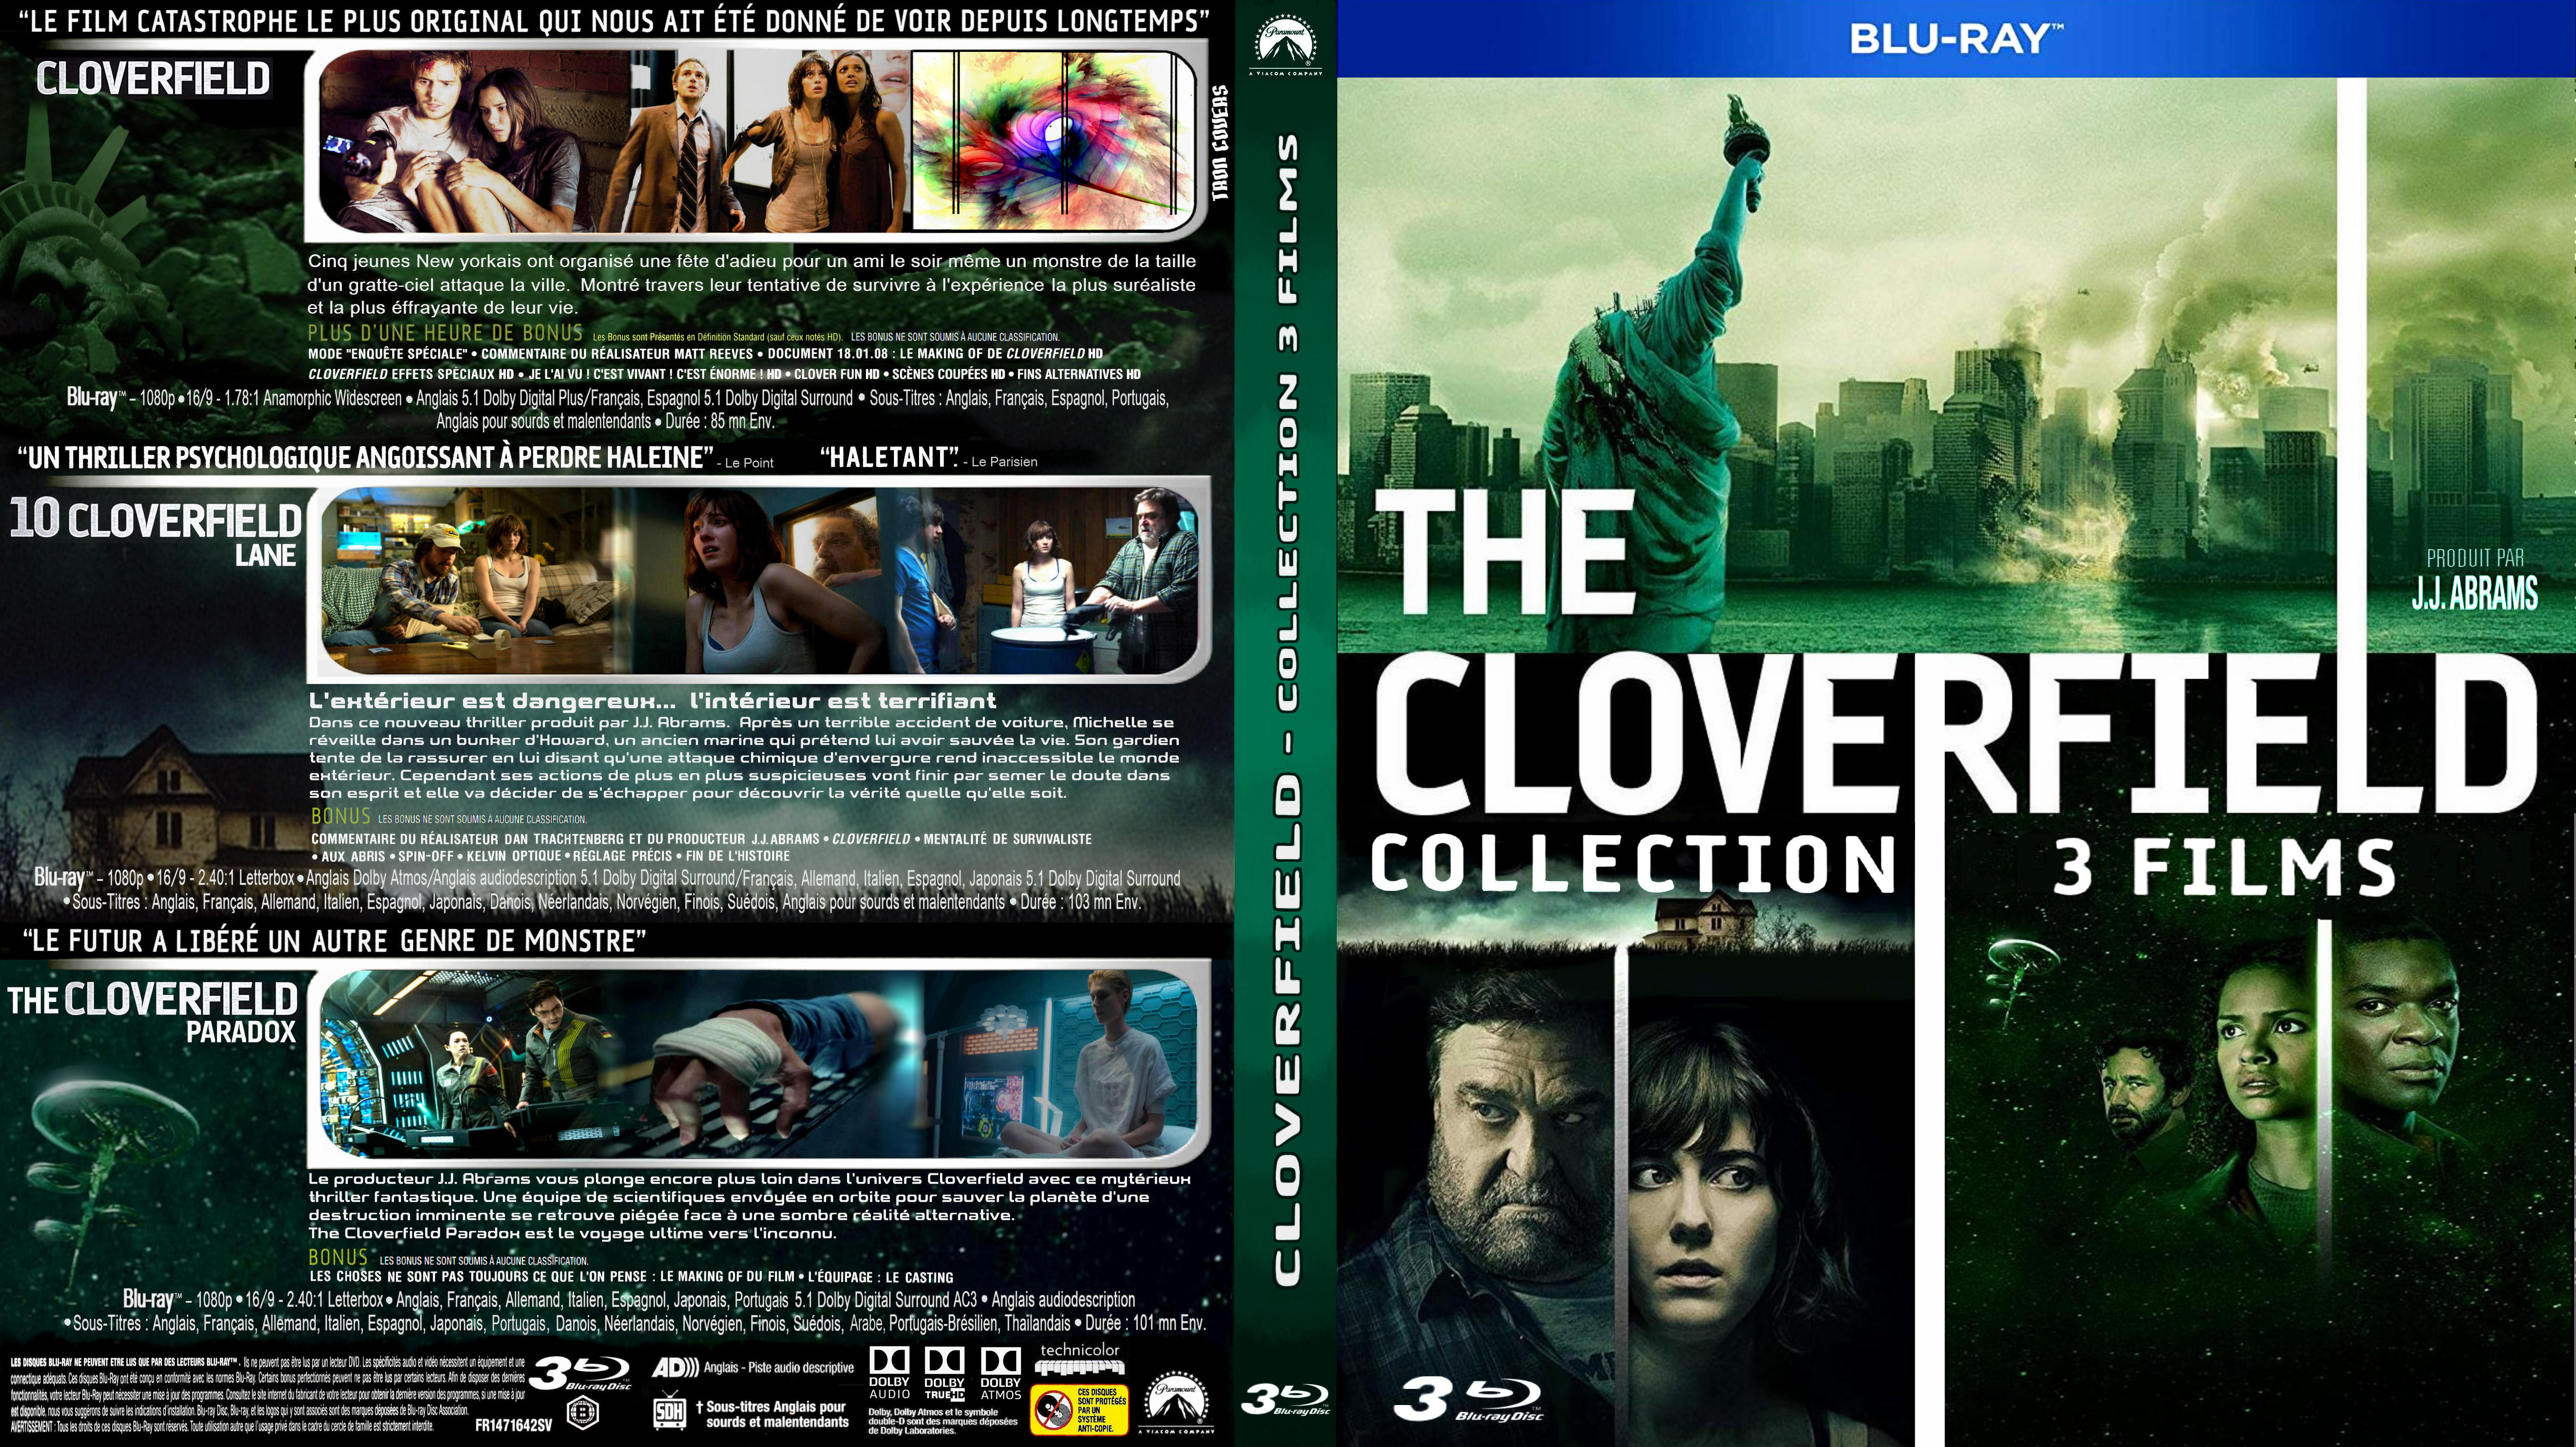 Jaquette DVD Cloverfield coffret trilogie custom (BLU-RAY)